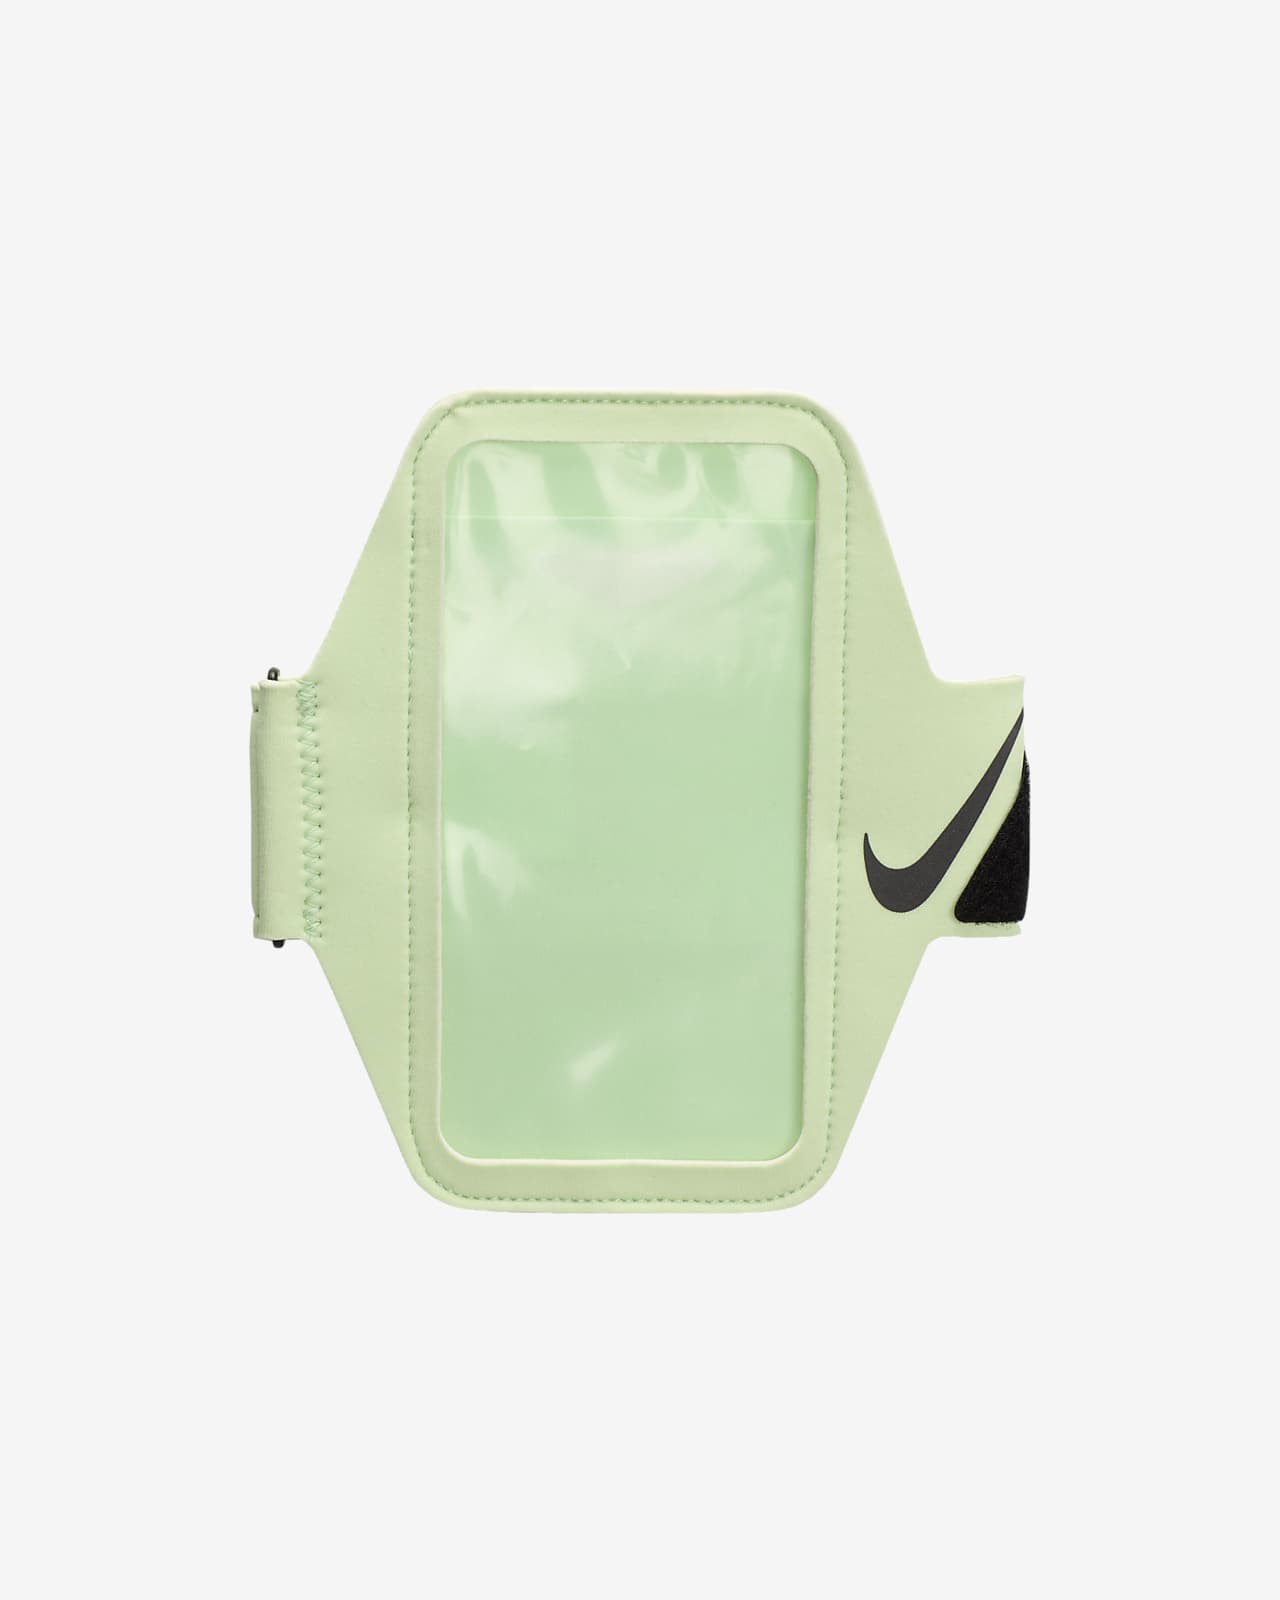 Pouzdro na paži Nike Lean Plus